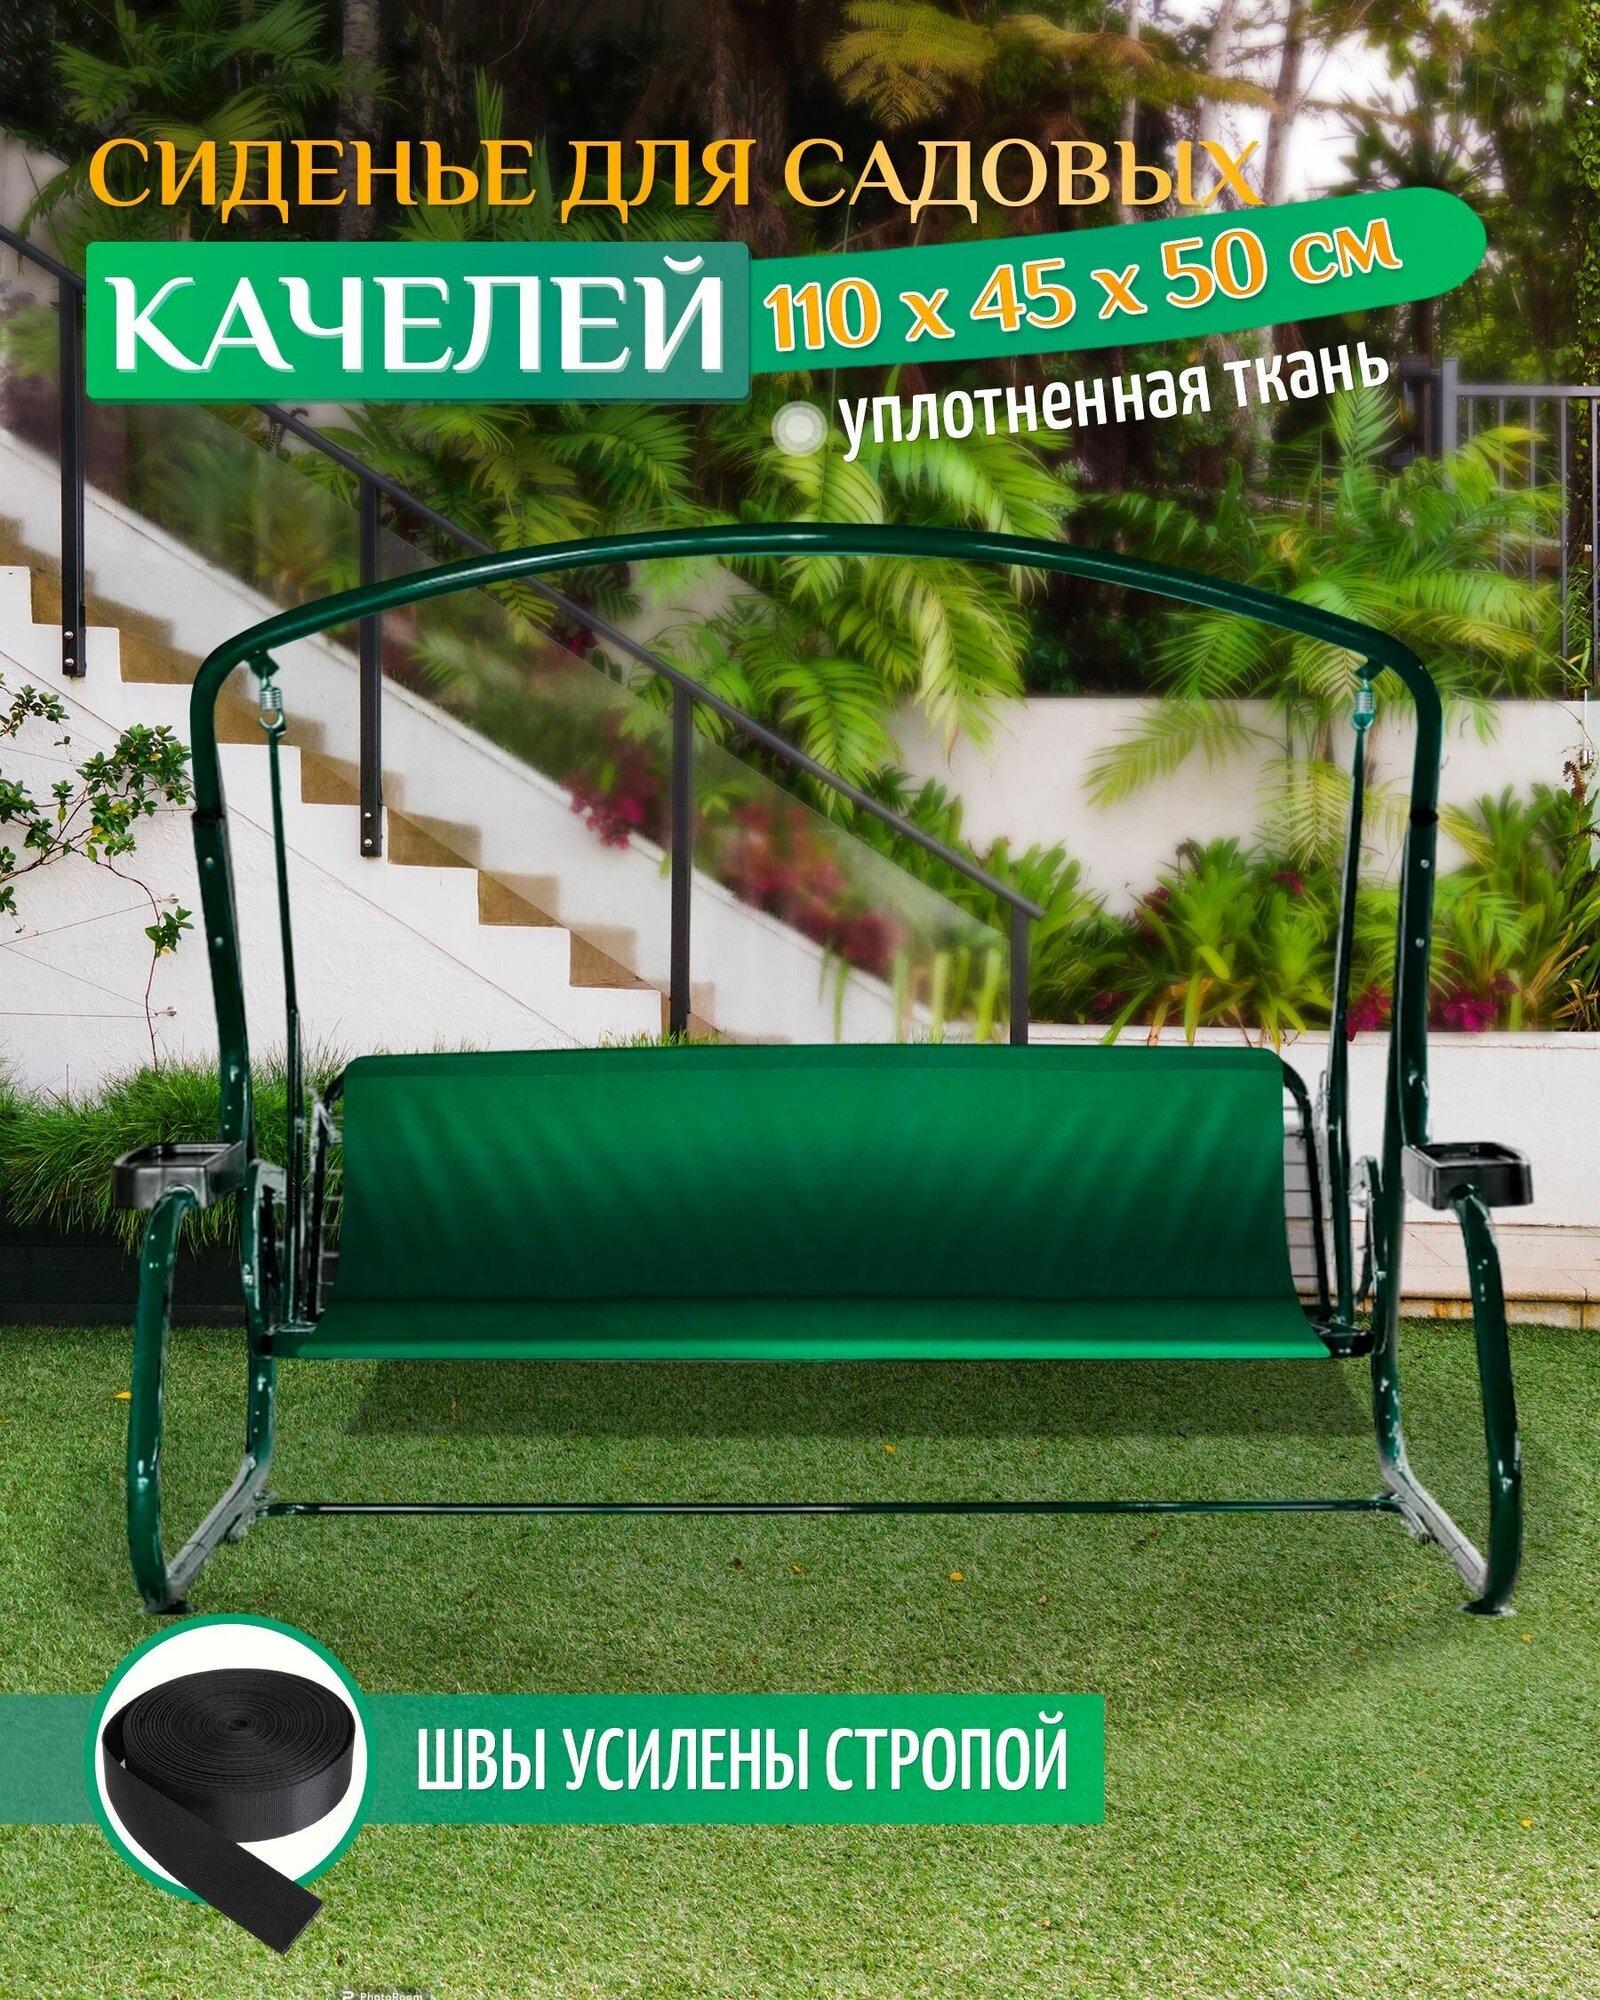 Сиденье для садовых качелей 110х45х50см (зеленый)